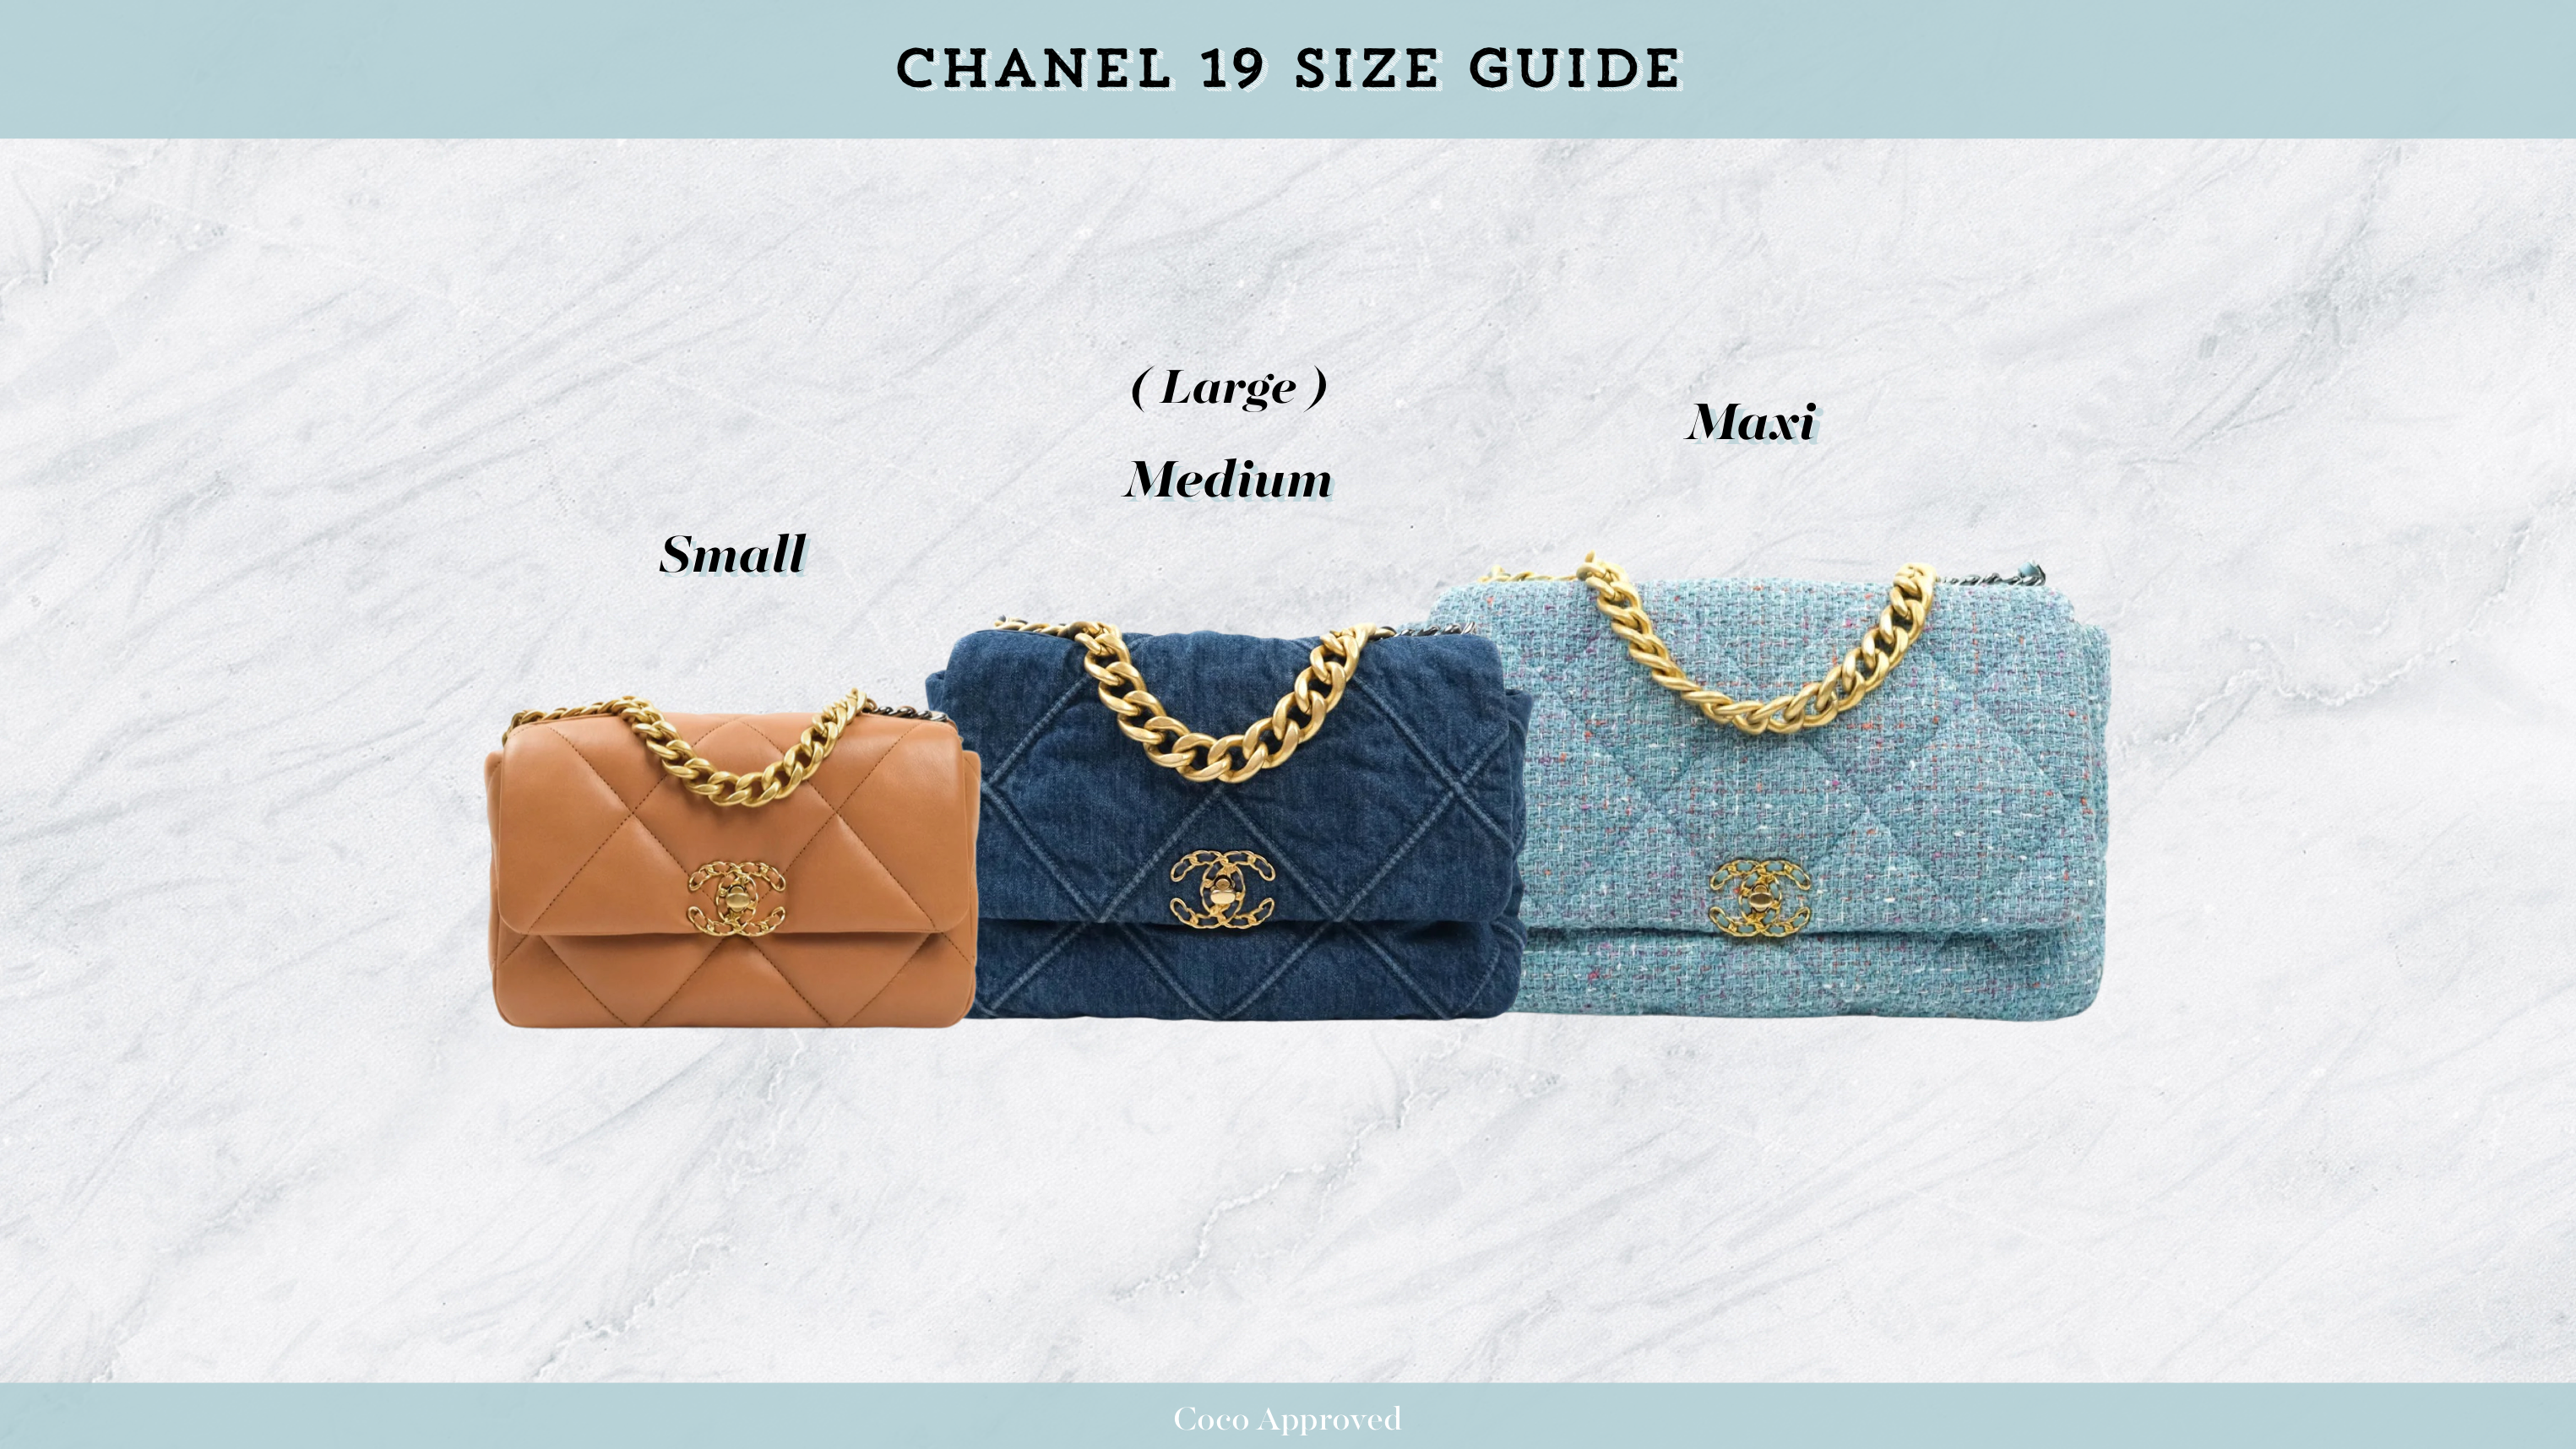 Chanel 19 Size Comparison: Maxi vs Large vs Small - Alyssa Smirnov